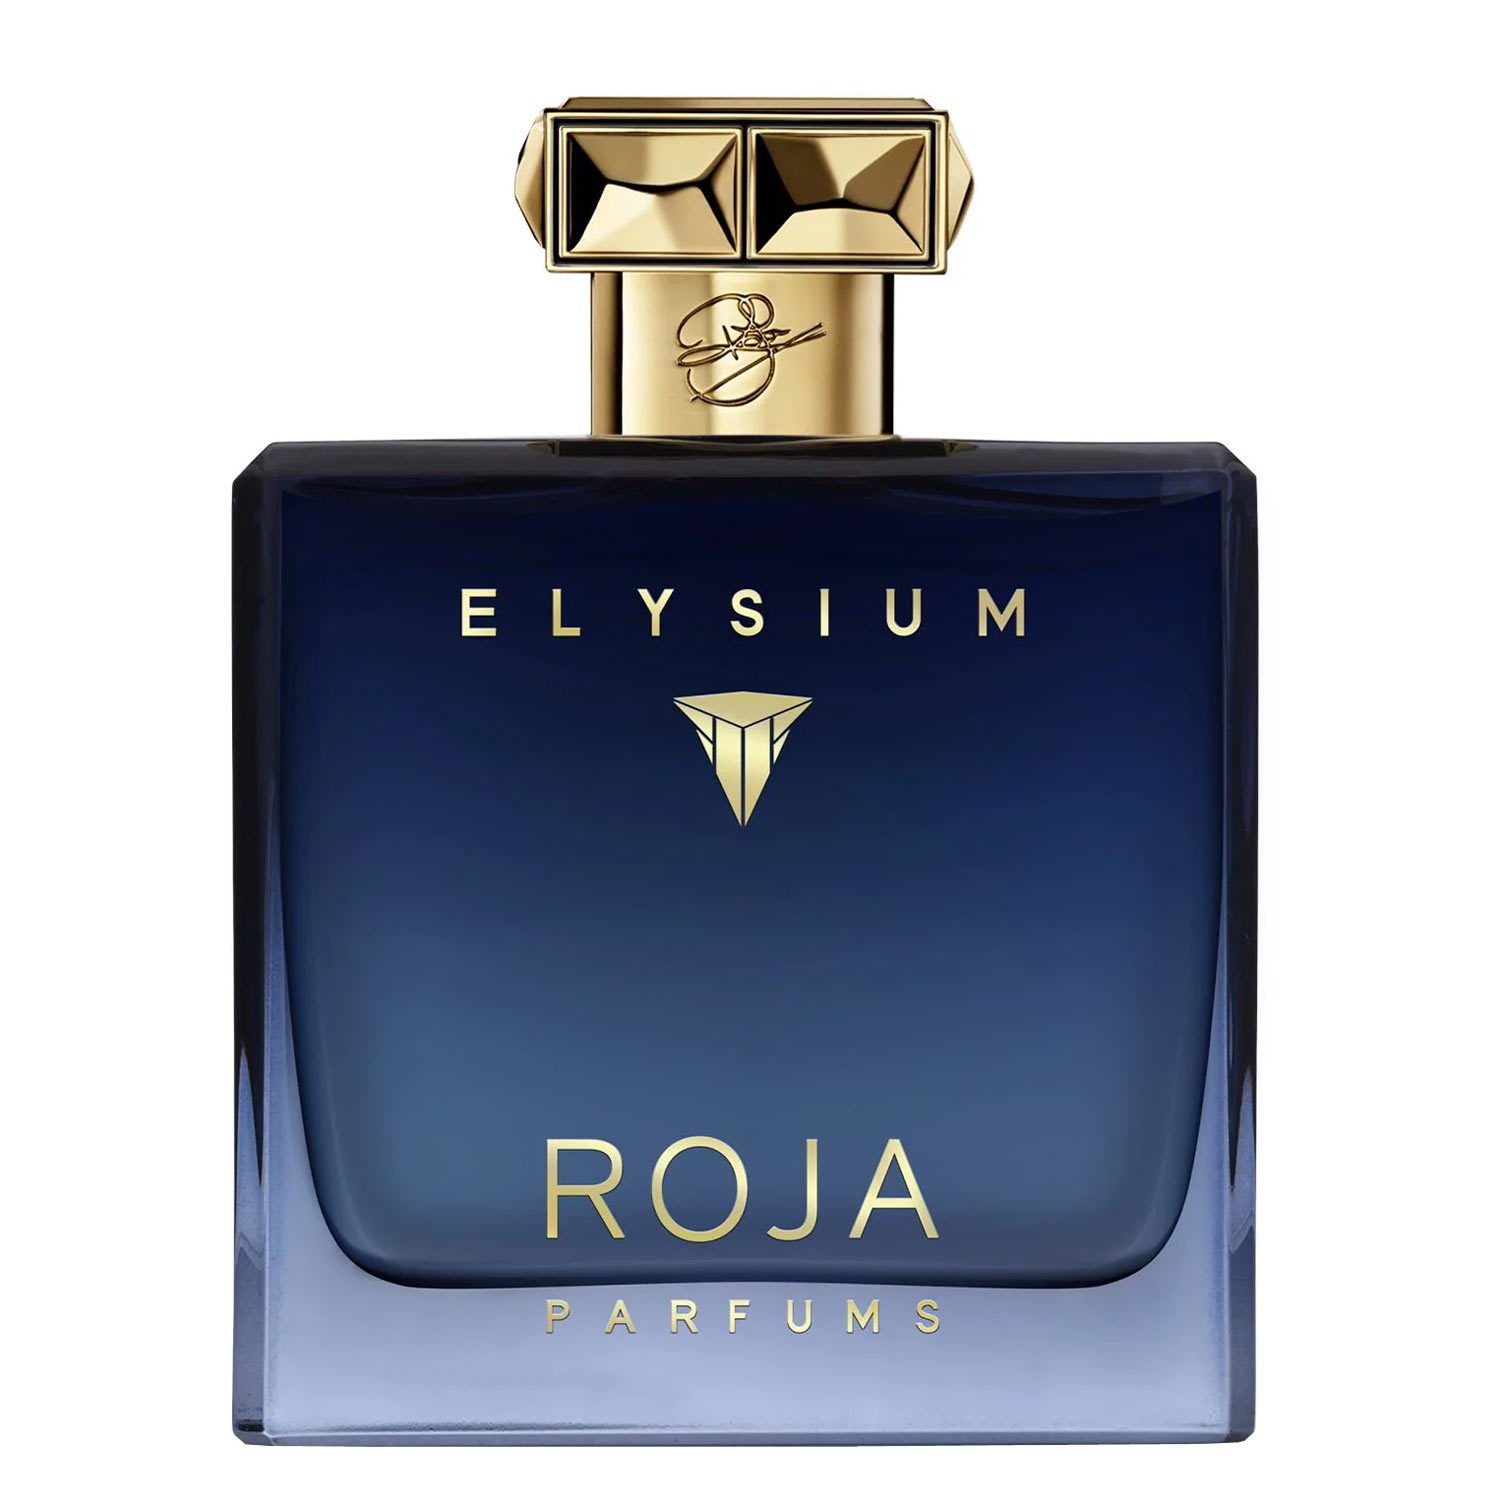 Elysium Pour Homme Parfum Roja Parfums Image